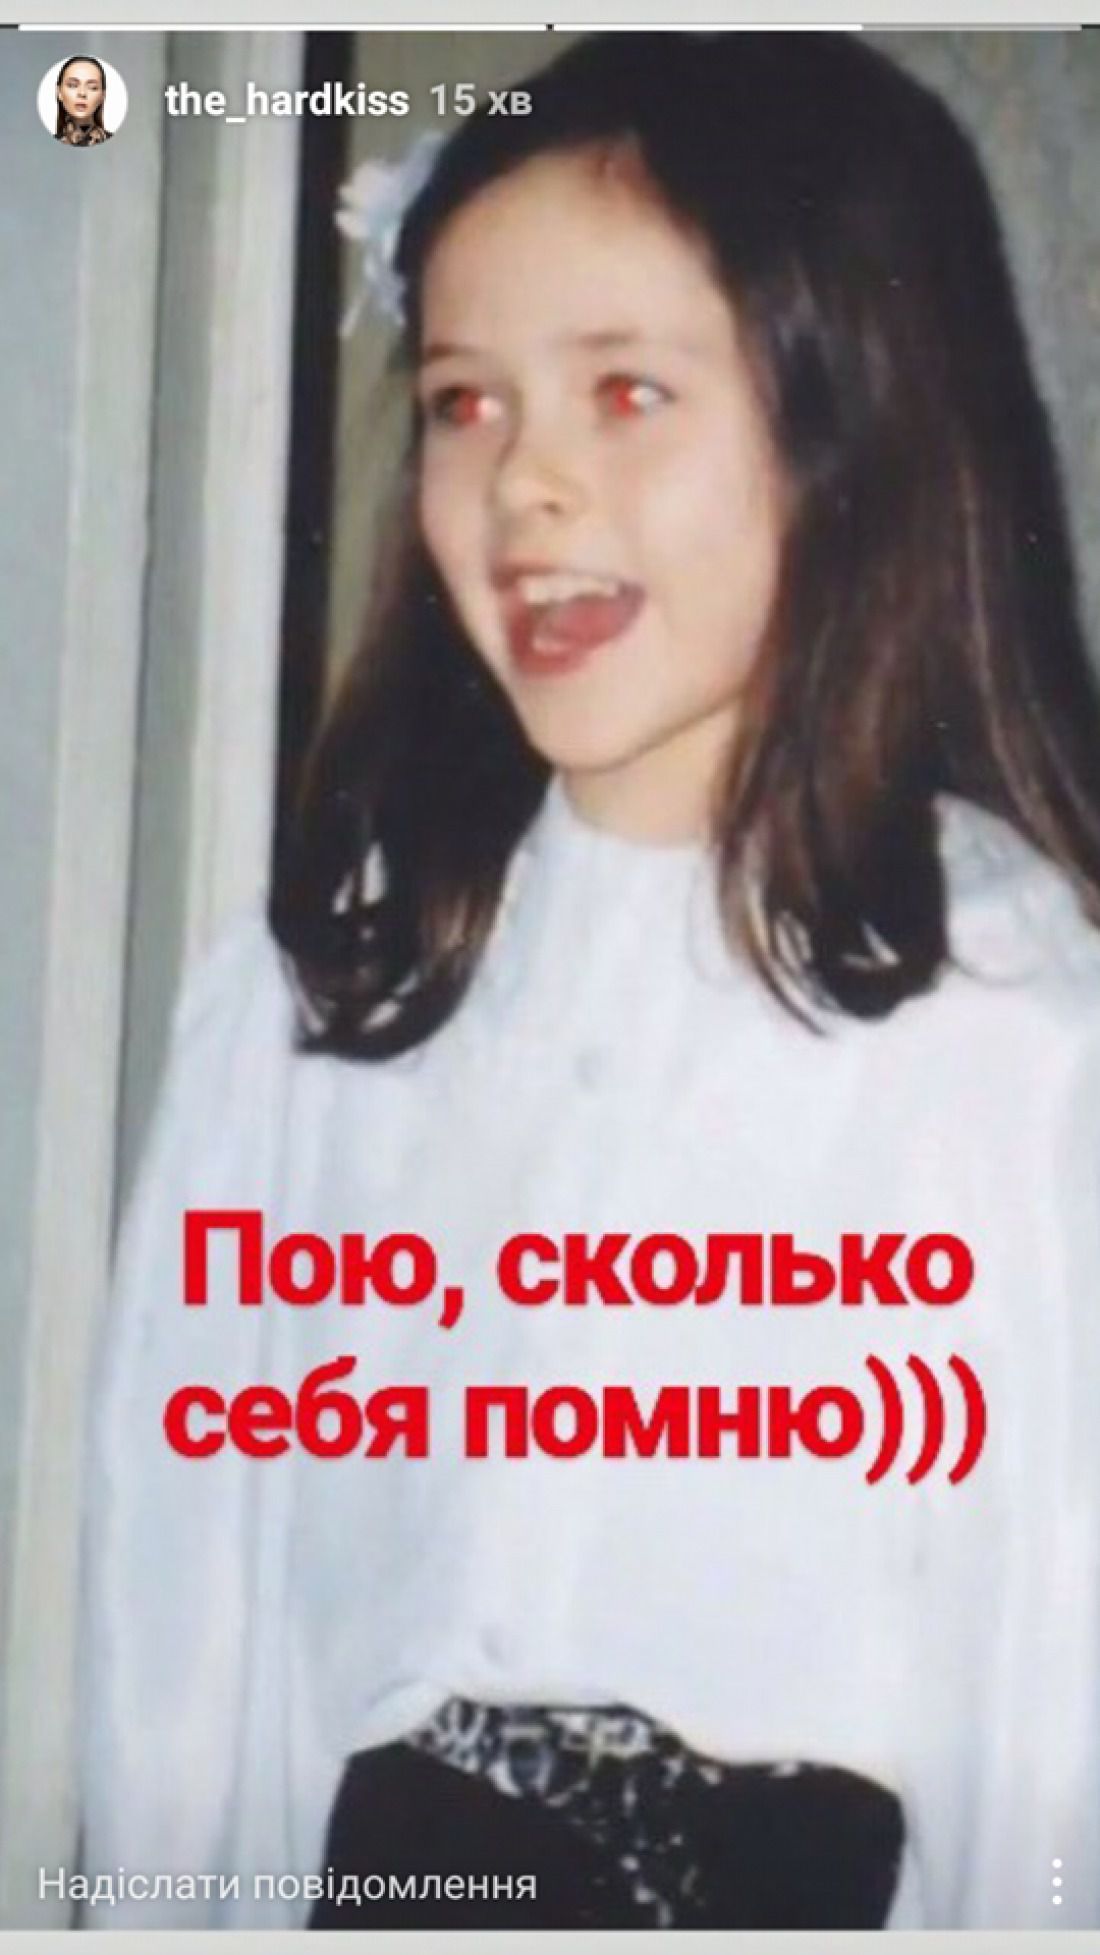 Співачка Юлія Саніна опублікувала своє дитяче фото. Фронтвумен популярної української групи The Hardkiss Юлія Саніна вирішила згадати дитинство,